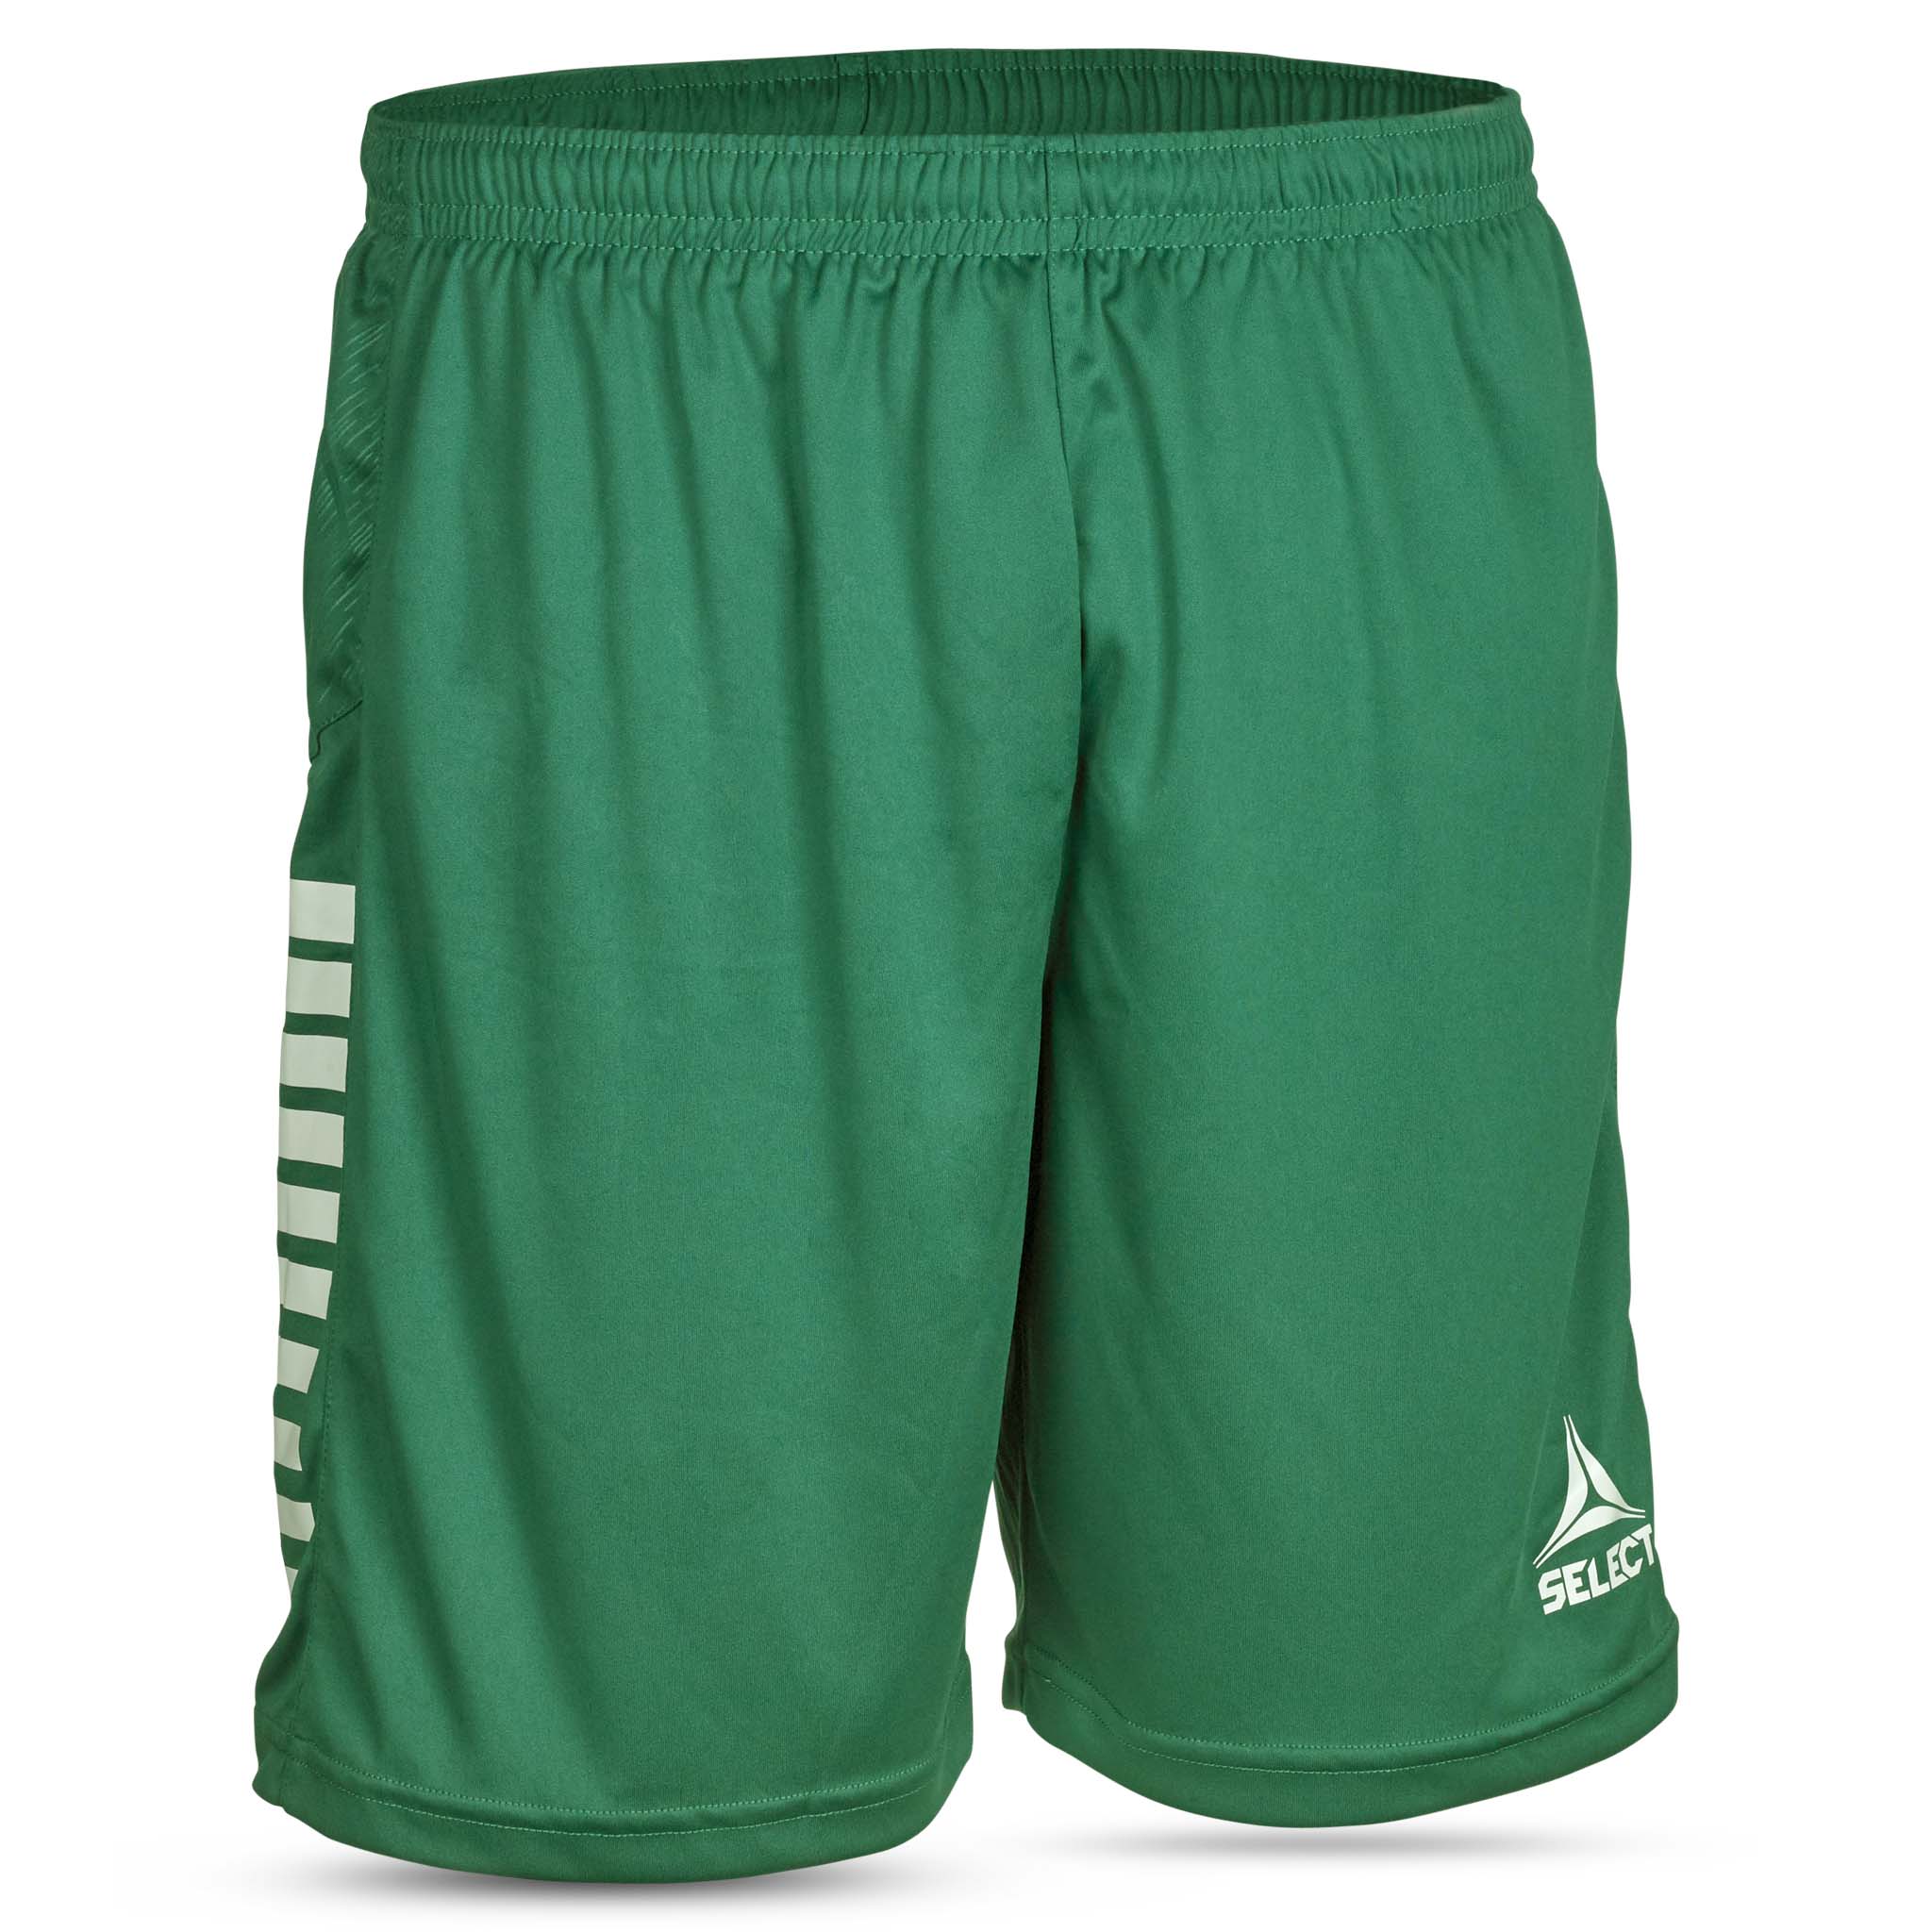 Spain Shorts - Børn #farve_grøn